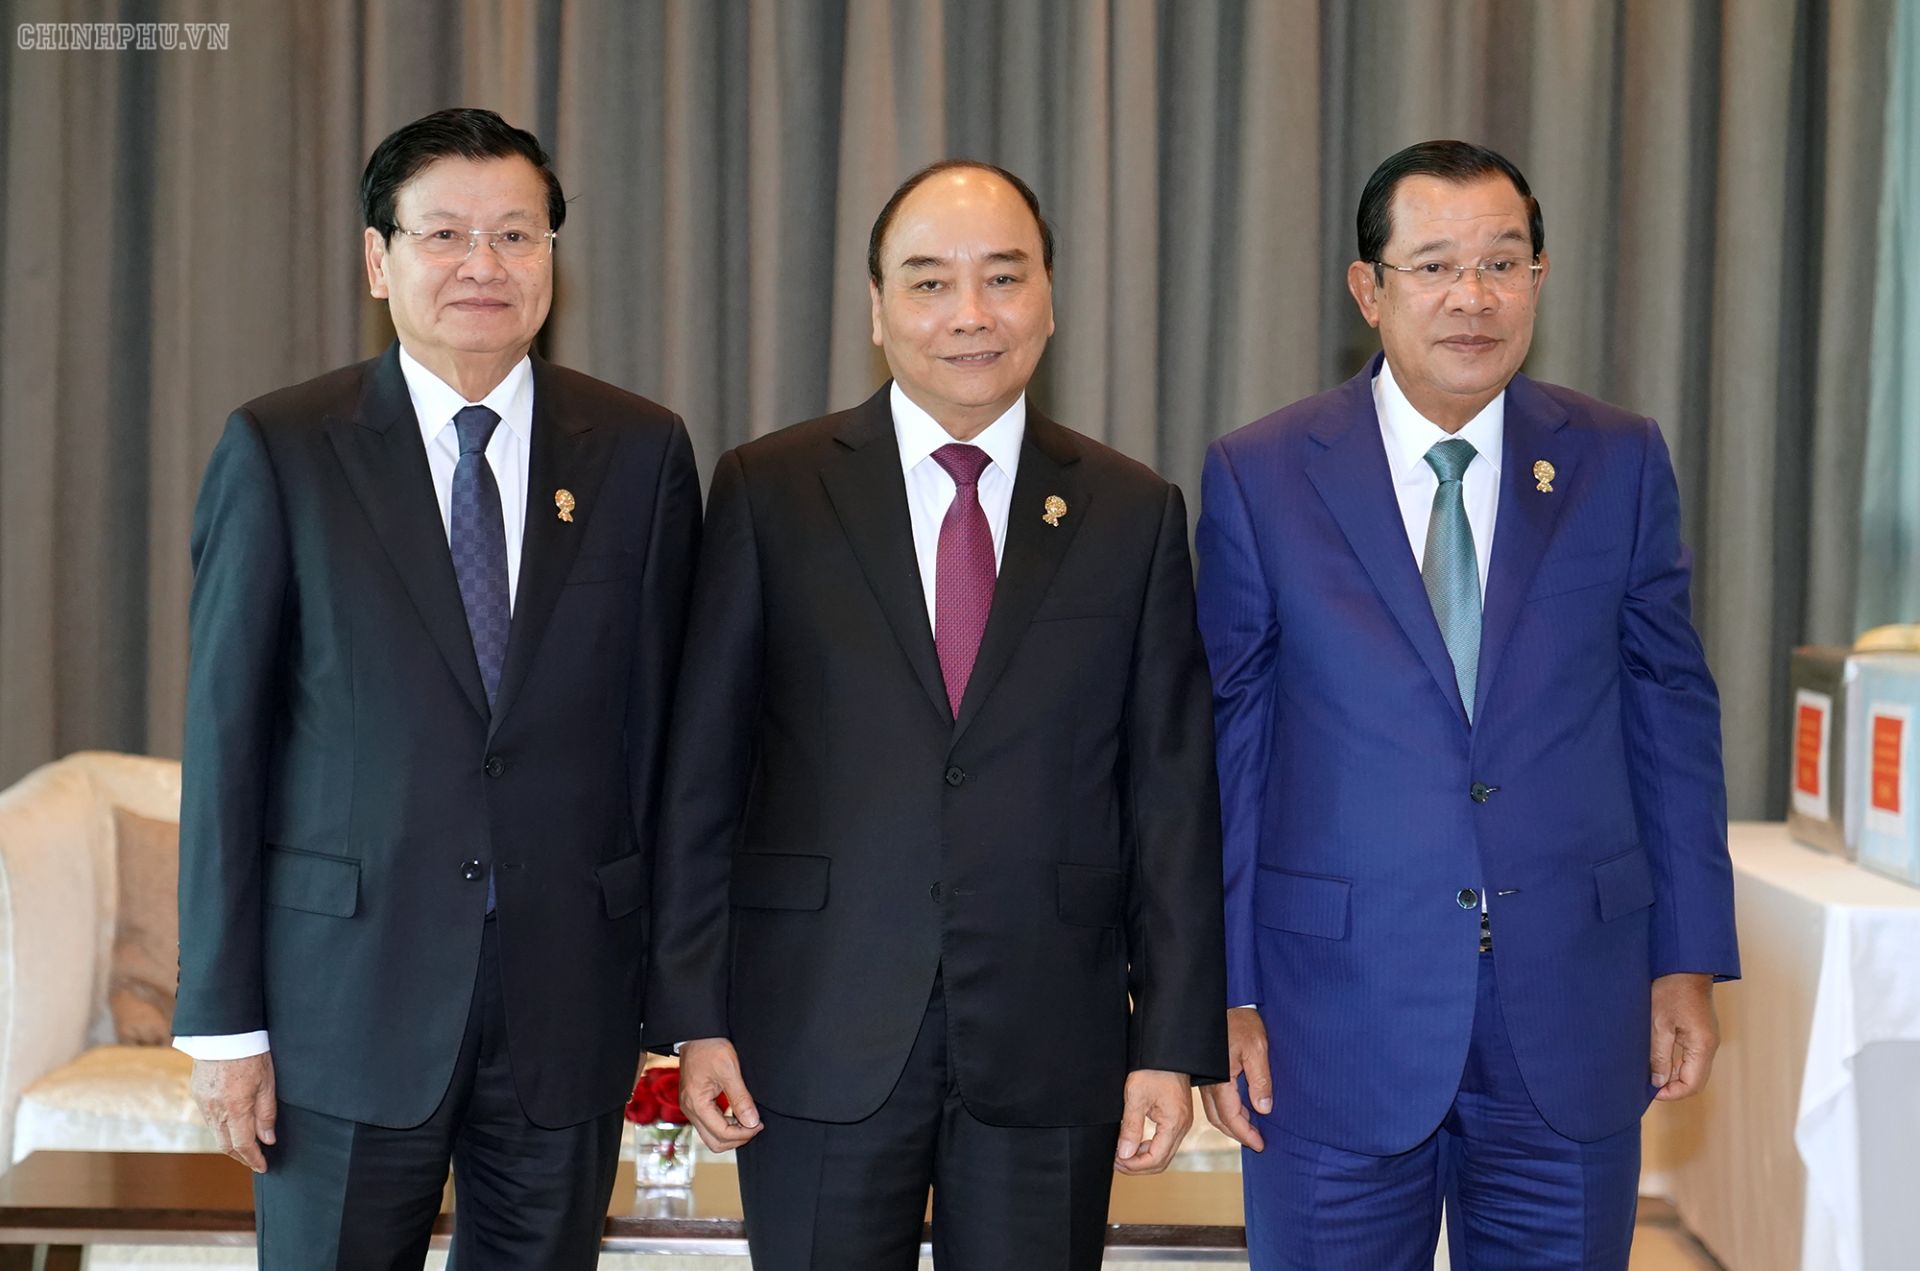 Thủ tướng Nguyễn Xuân Phúc trao đổi song phương bên lề ASEAN 35